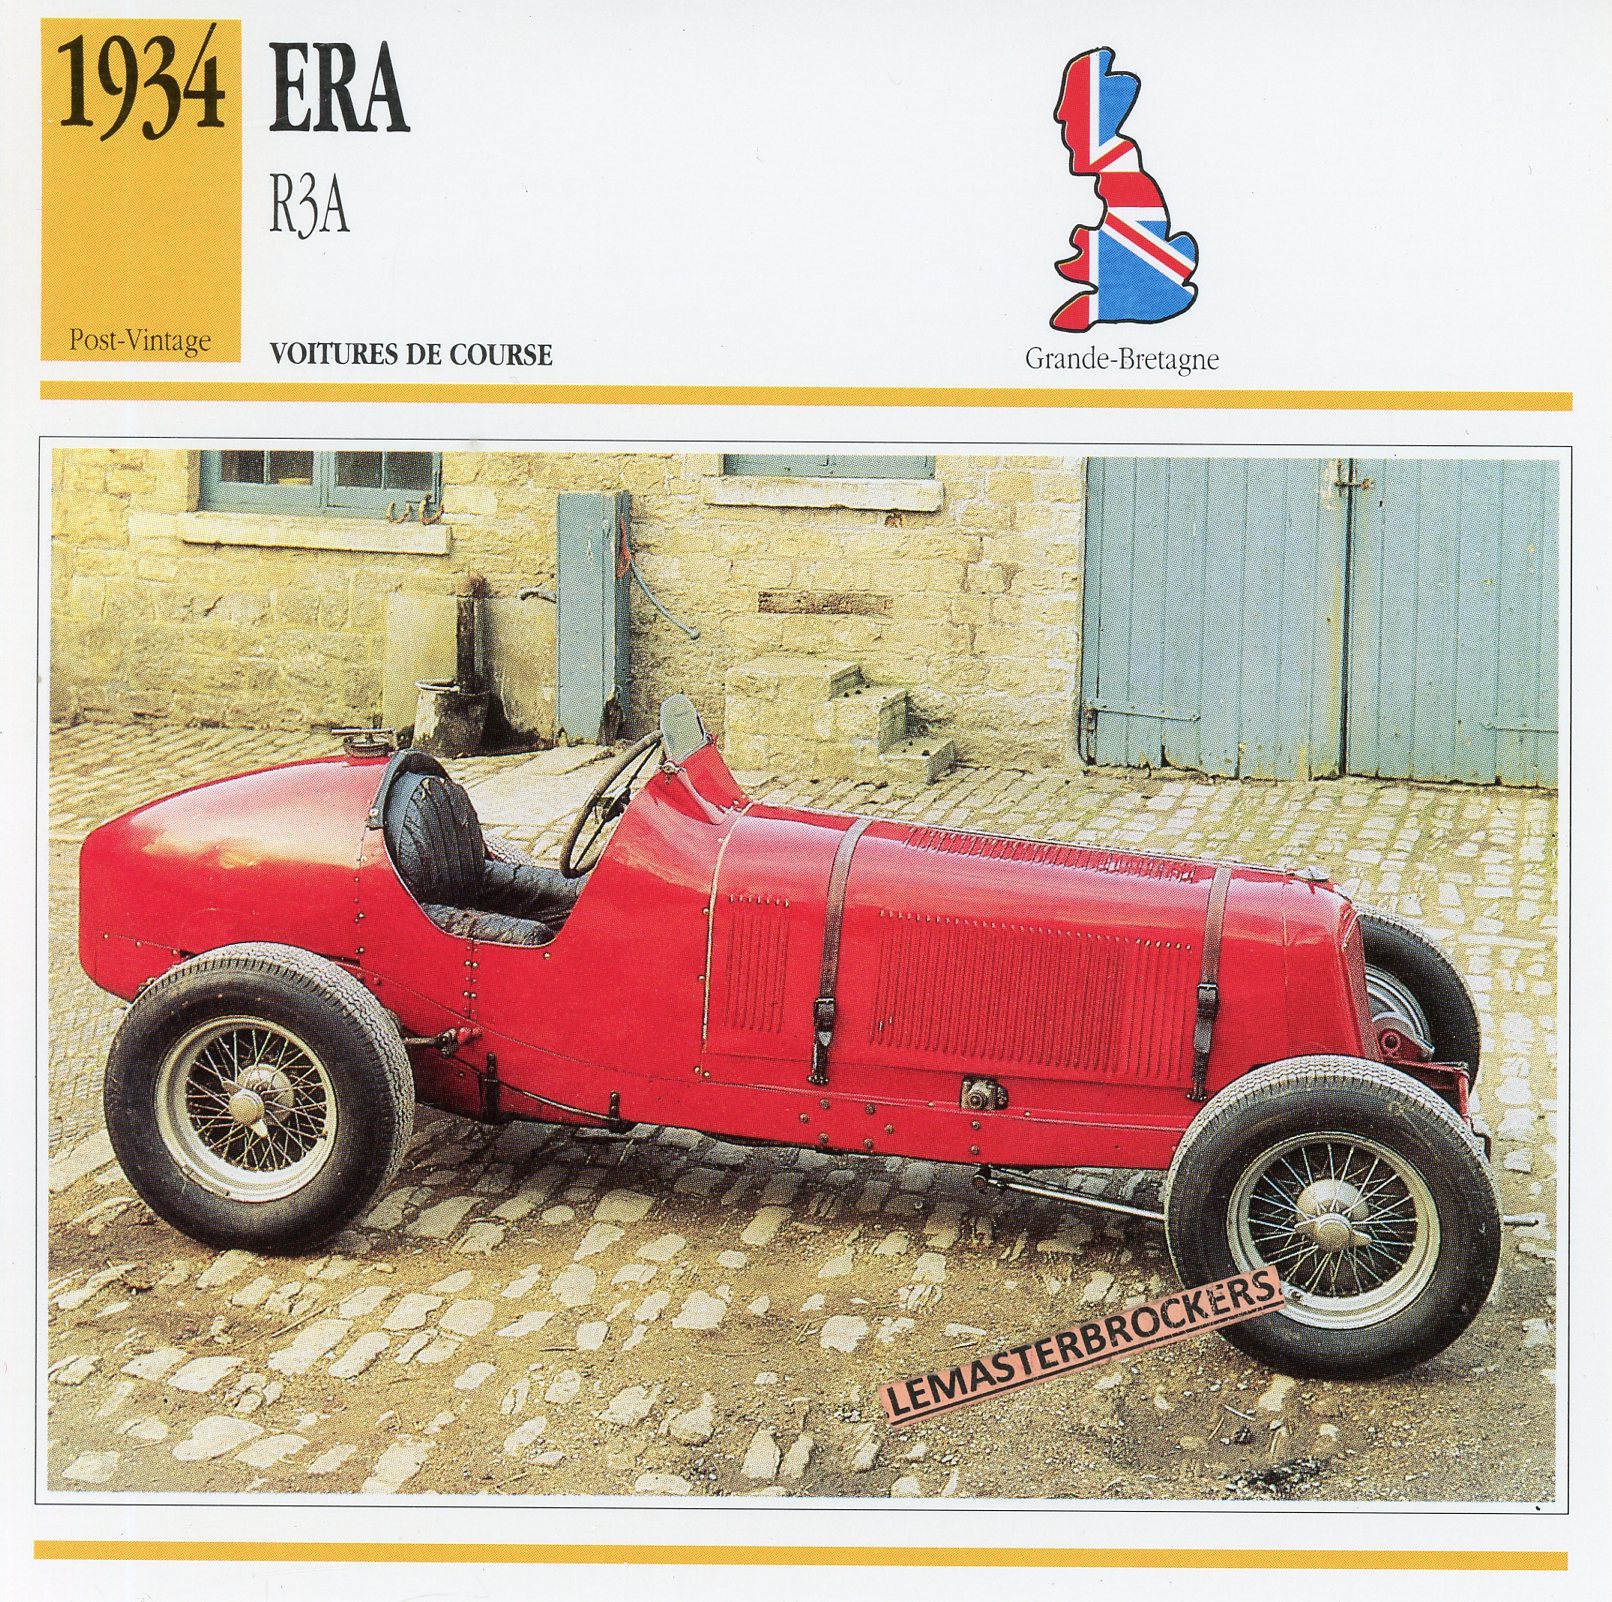 FICHE AUTO ERA R3A 1934 - CARD CAR ERA